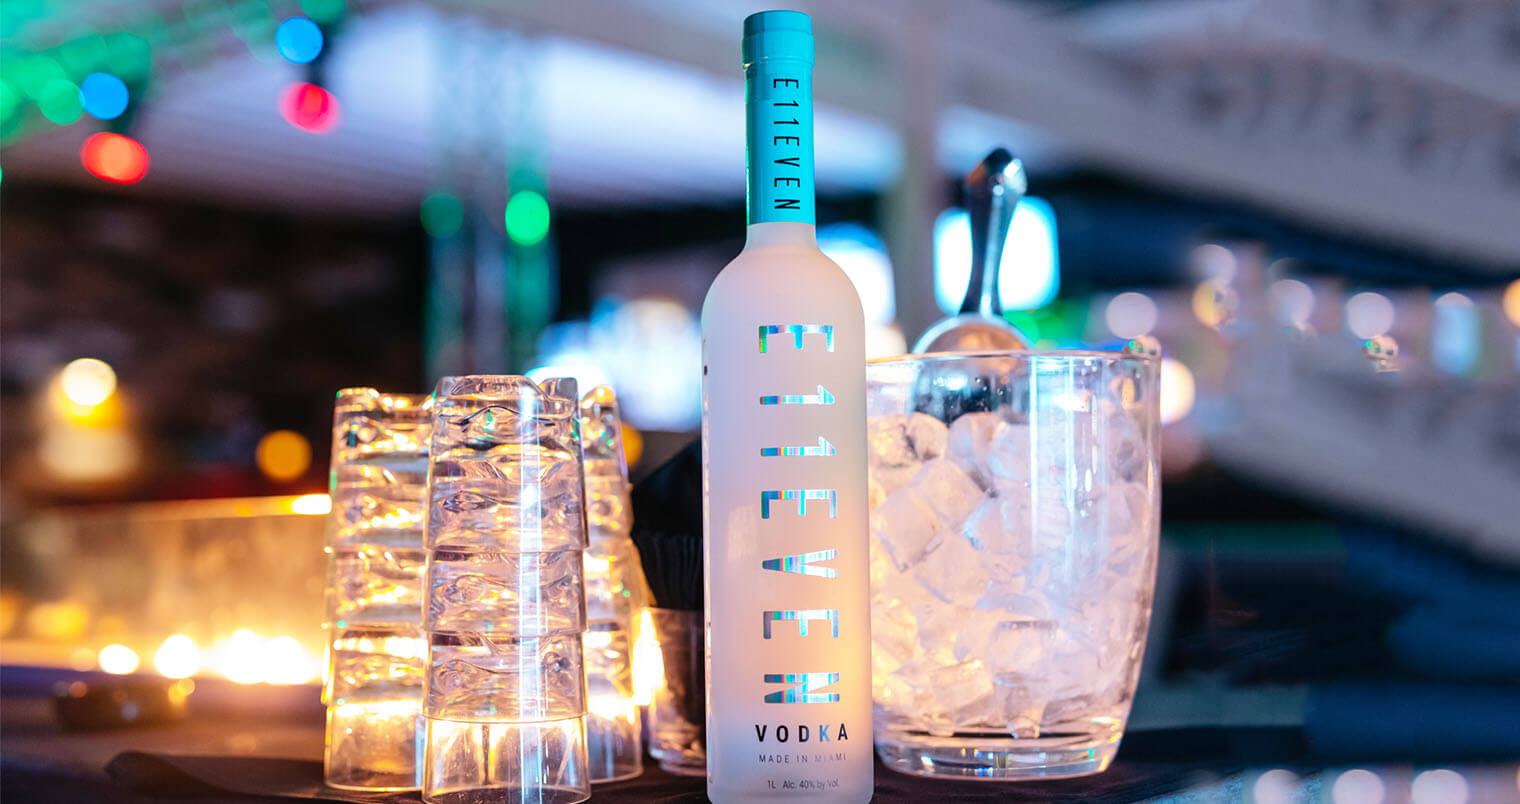 E11EVEN Vodka, featured image